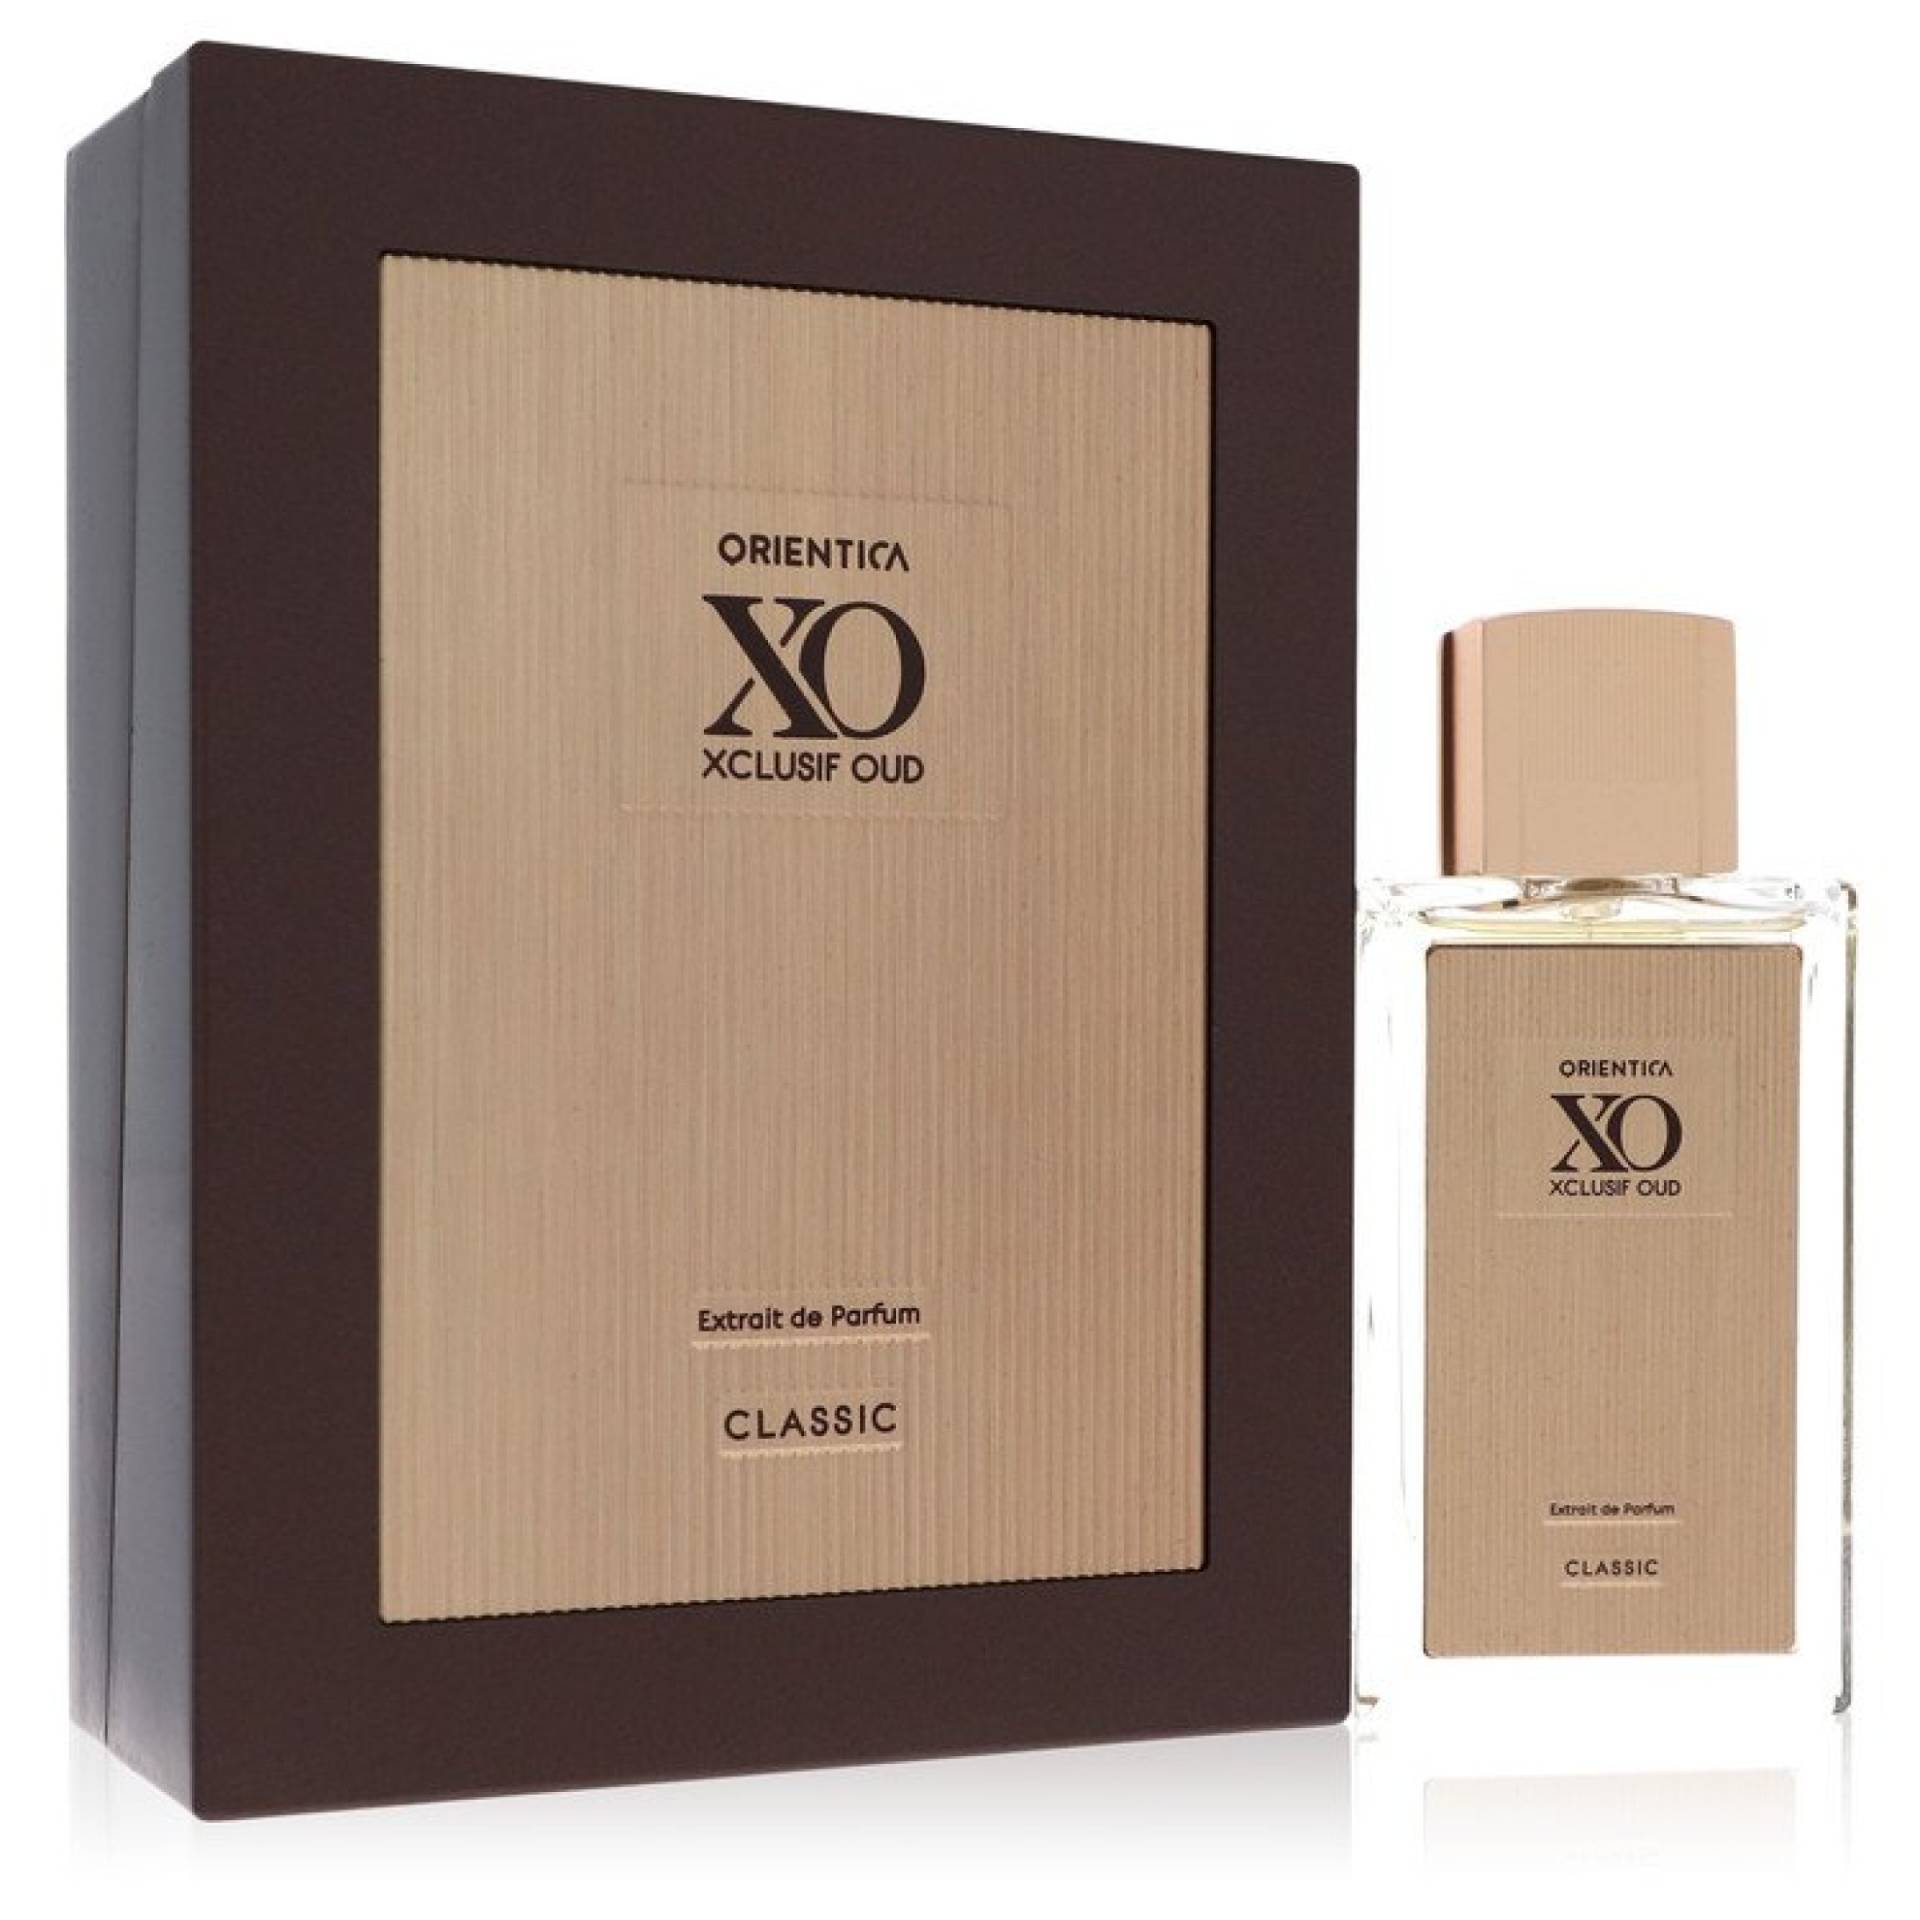 Orientica XO Xclusif Oud Classic Extrait De Parfum (Unisex) 60 ml von Orientica